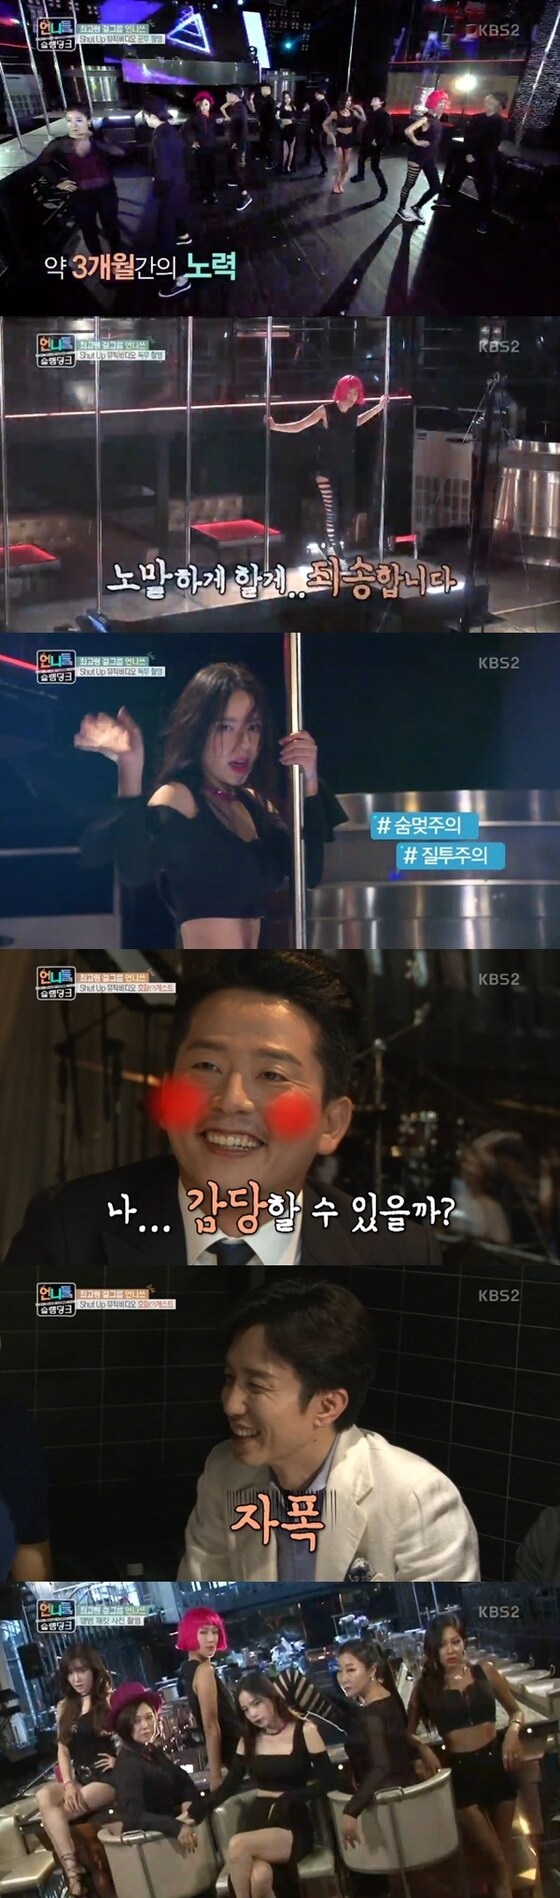 언니쓰가 'Shut up' 뮤직비디오를 촬영하는 모습이 공개됐다. © News1star/ KBS2 '언니들의 슬램덩크' 캡처